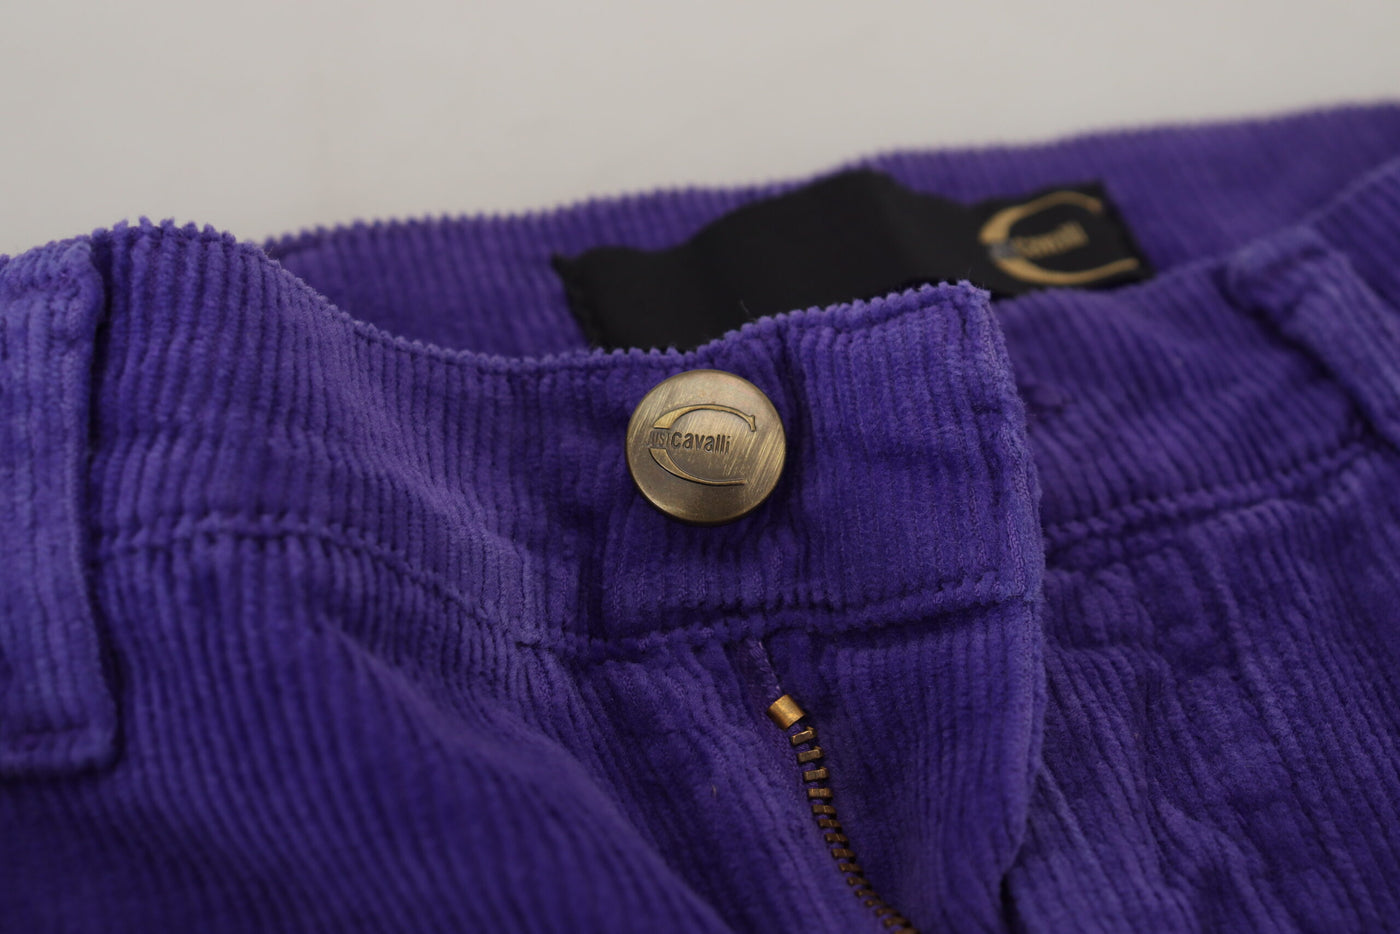 Purple Cotton Corduroy Women Pants